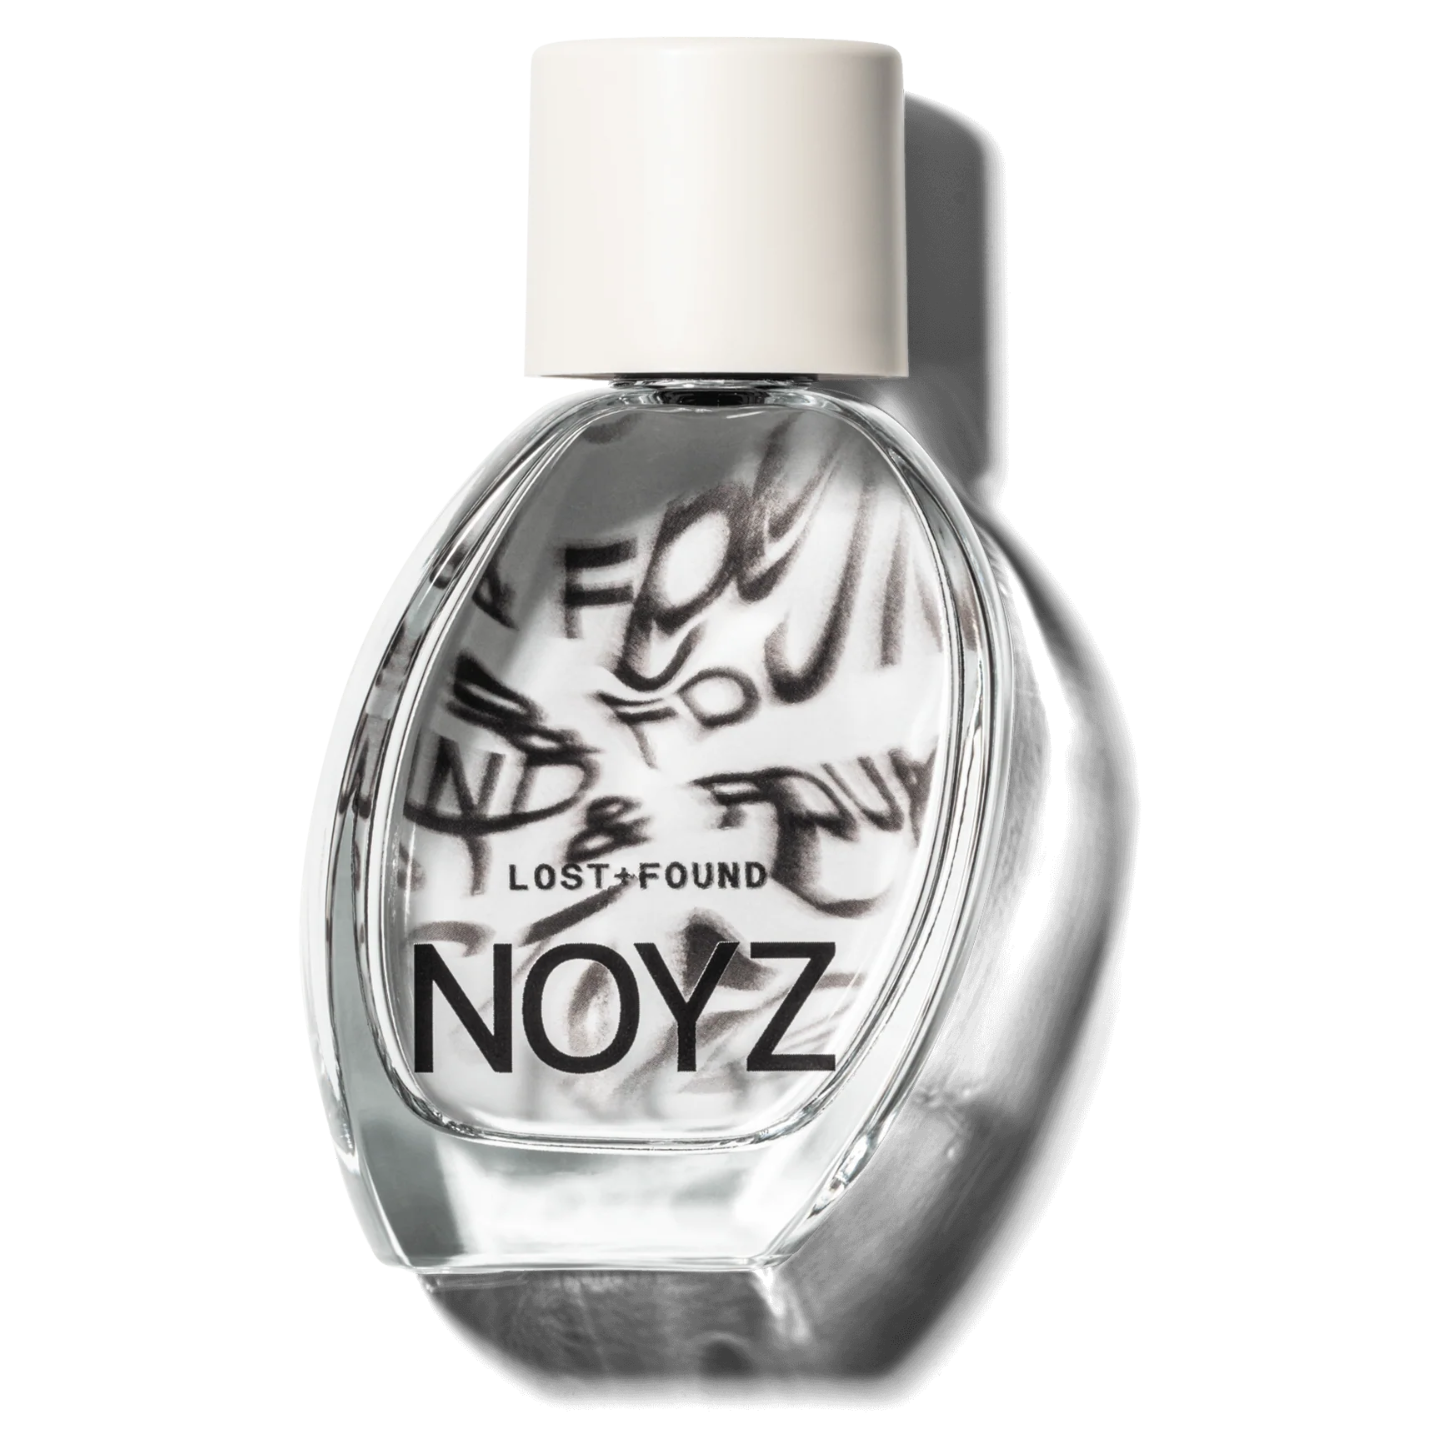 Noyz Lost + Found fragrance